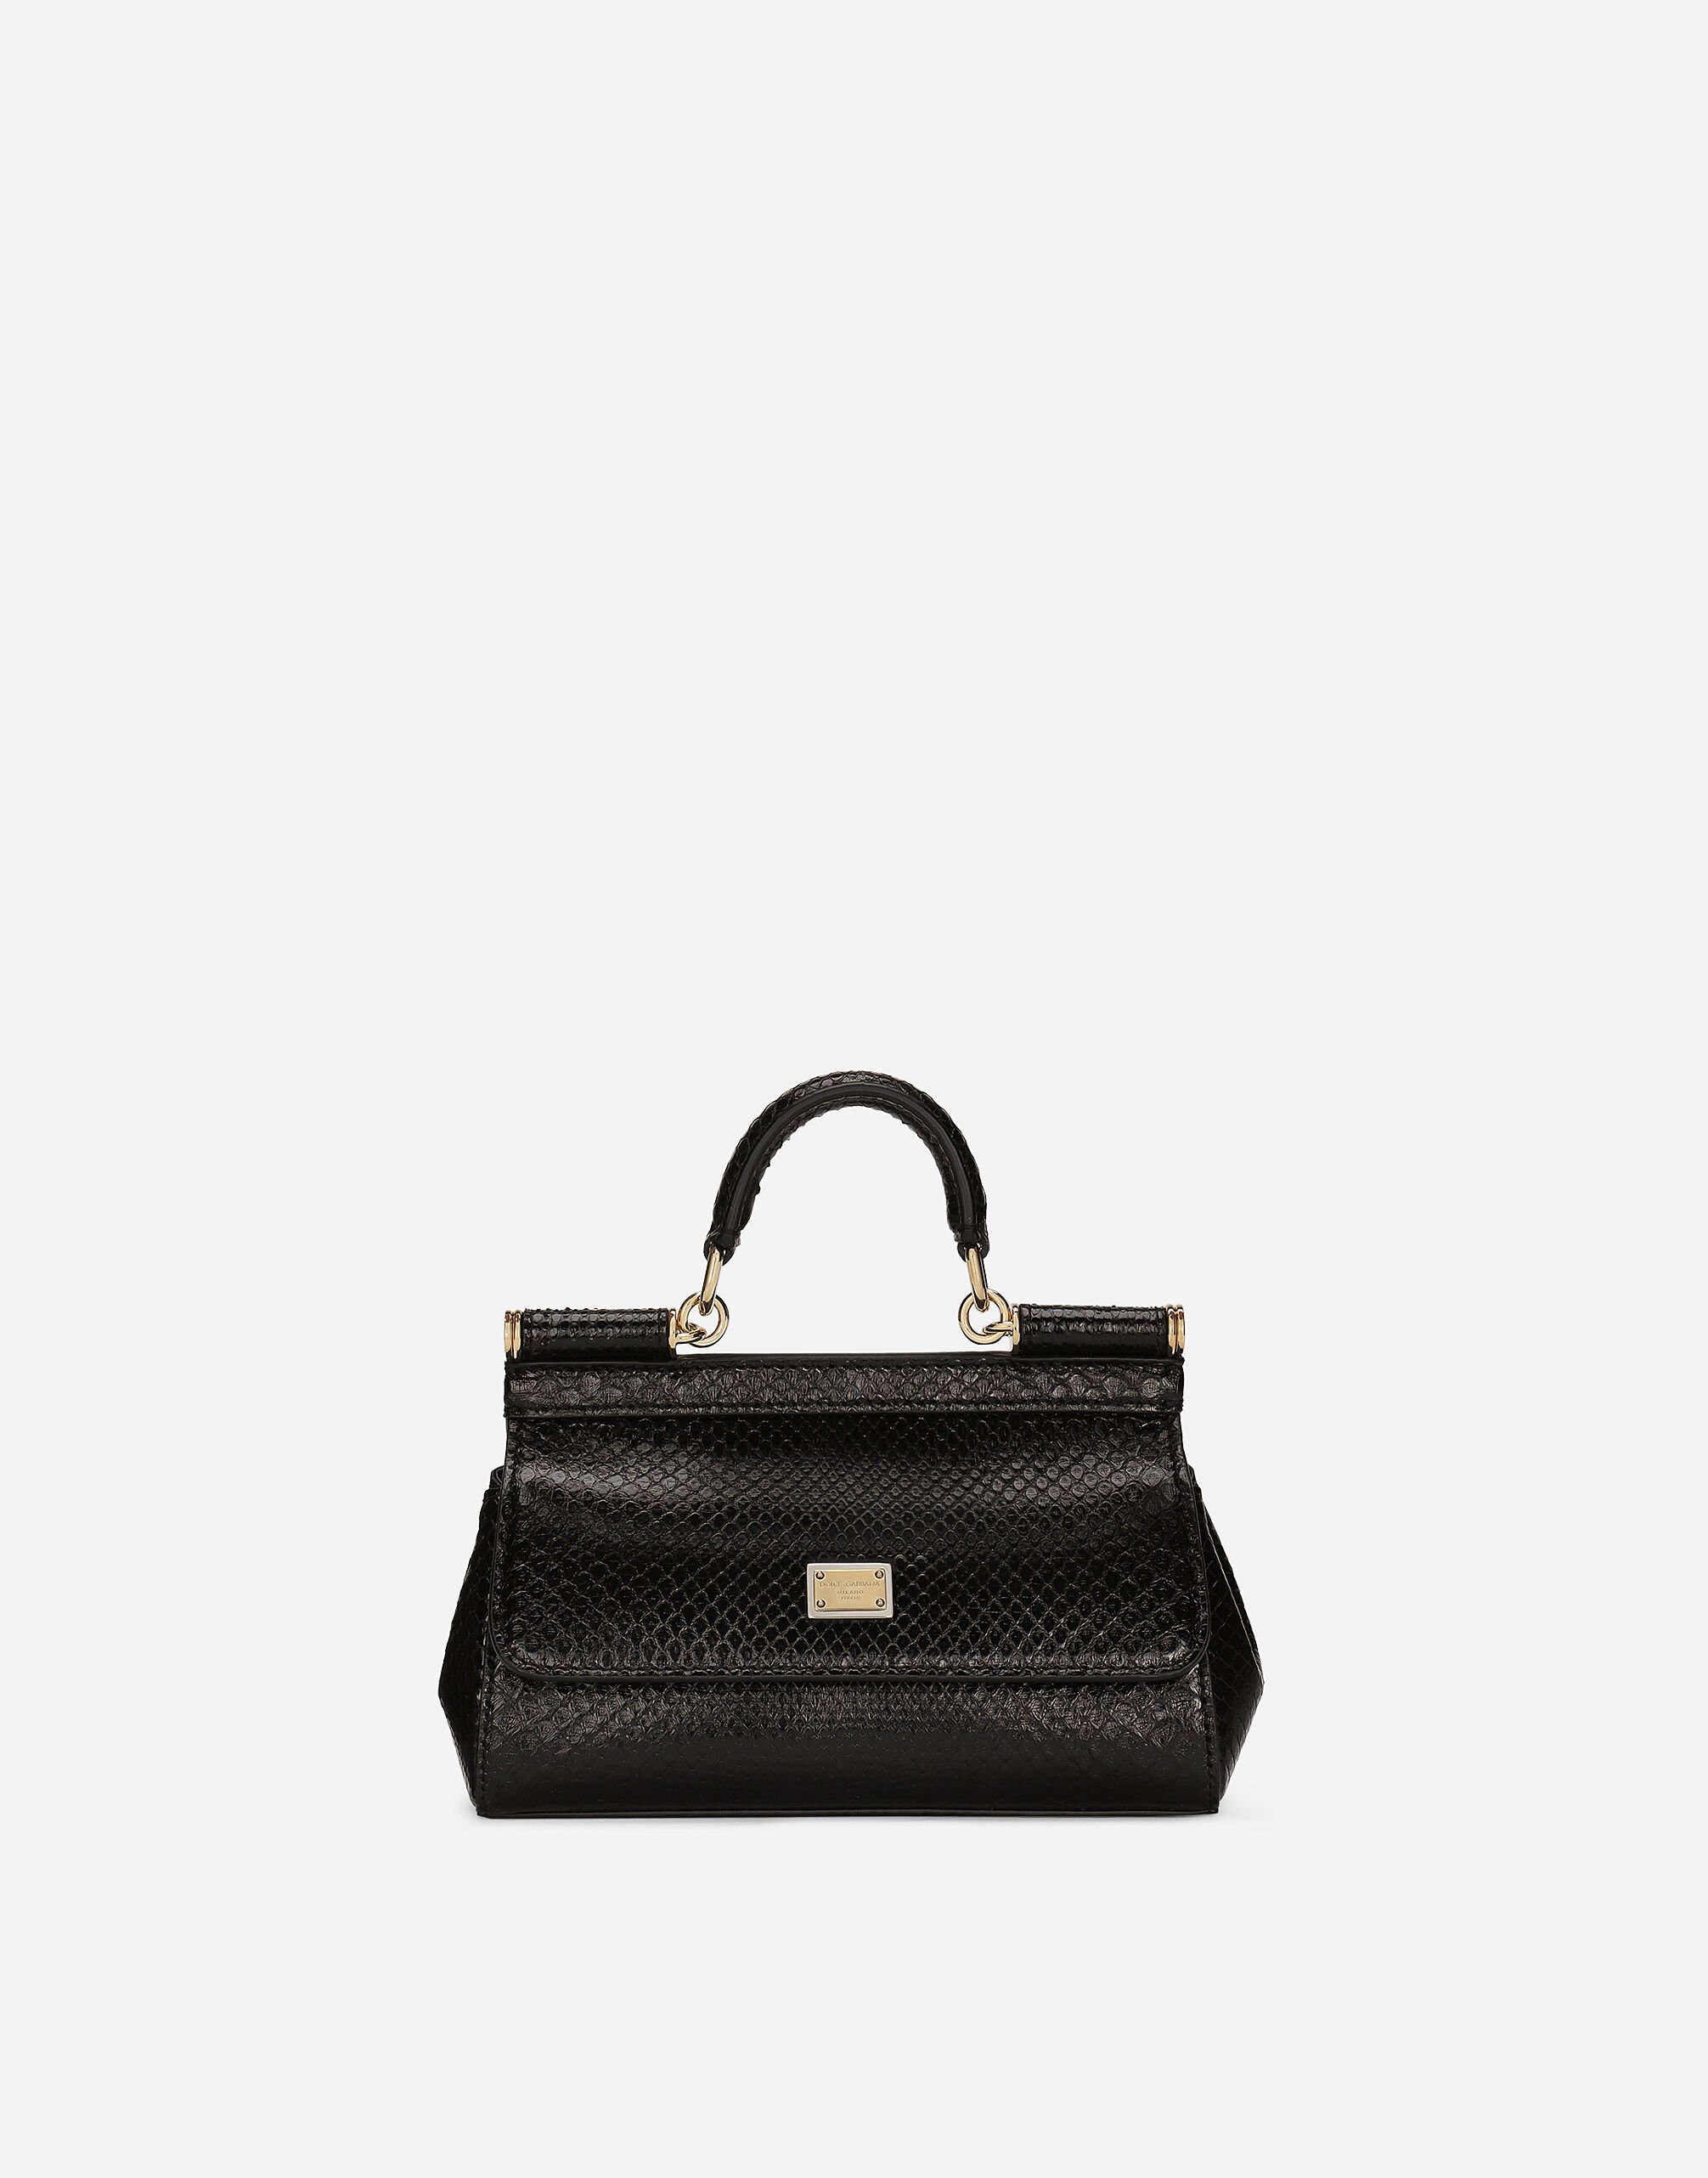 Dolce & Gabbana حقيبة يد سيسيلي صغيرة متعدد الألوان BB7655A4547